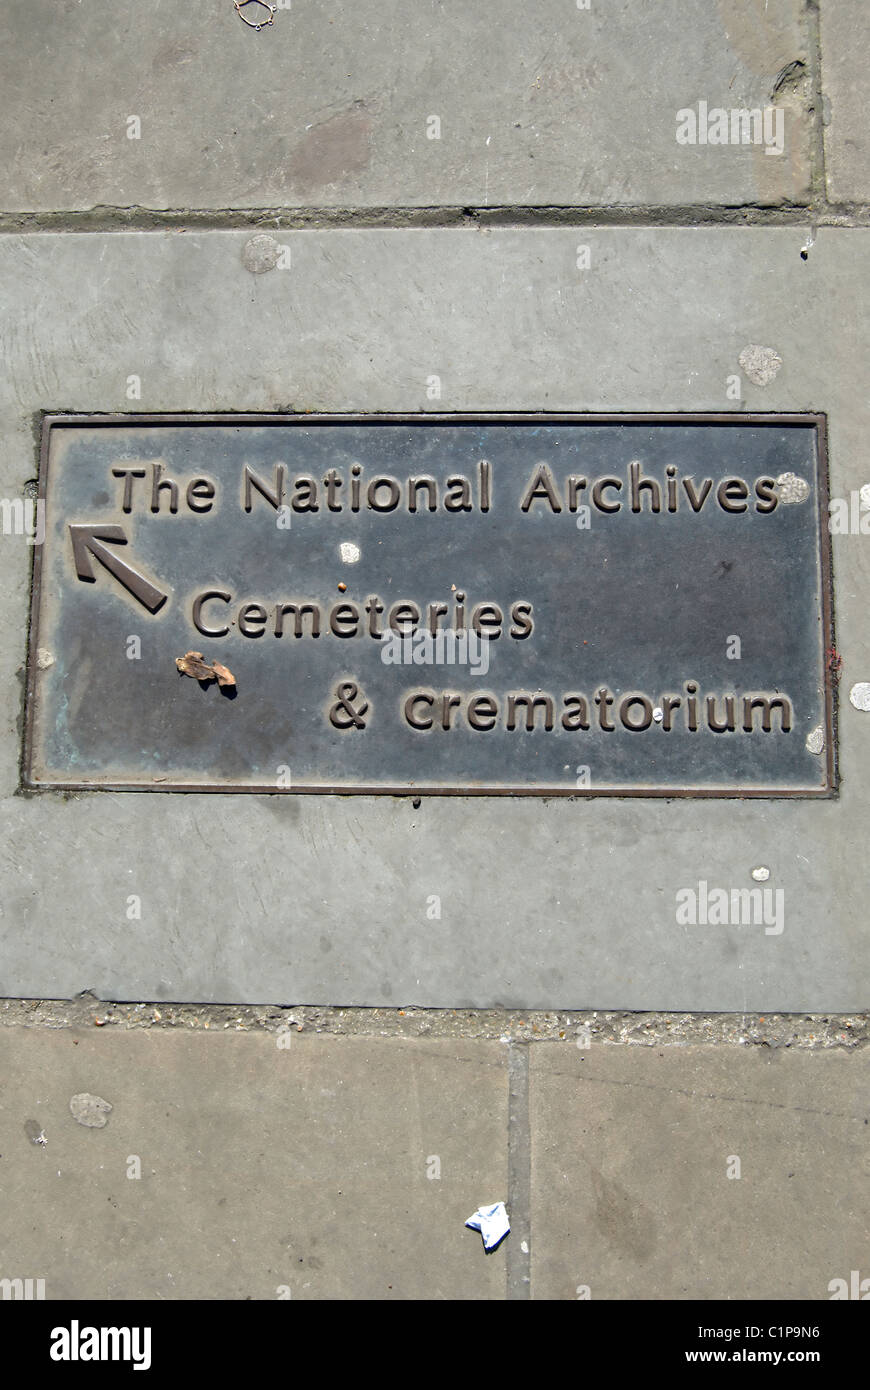 Plaque de la chaussée donnant des directives aux archives nationales et locales des cimetières et crématoires, à Kew, au sud-ouest de Londres, Angleterre Banque D'Images